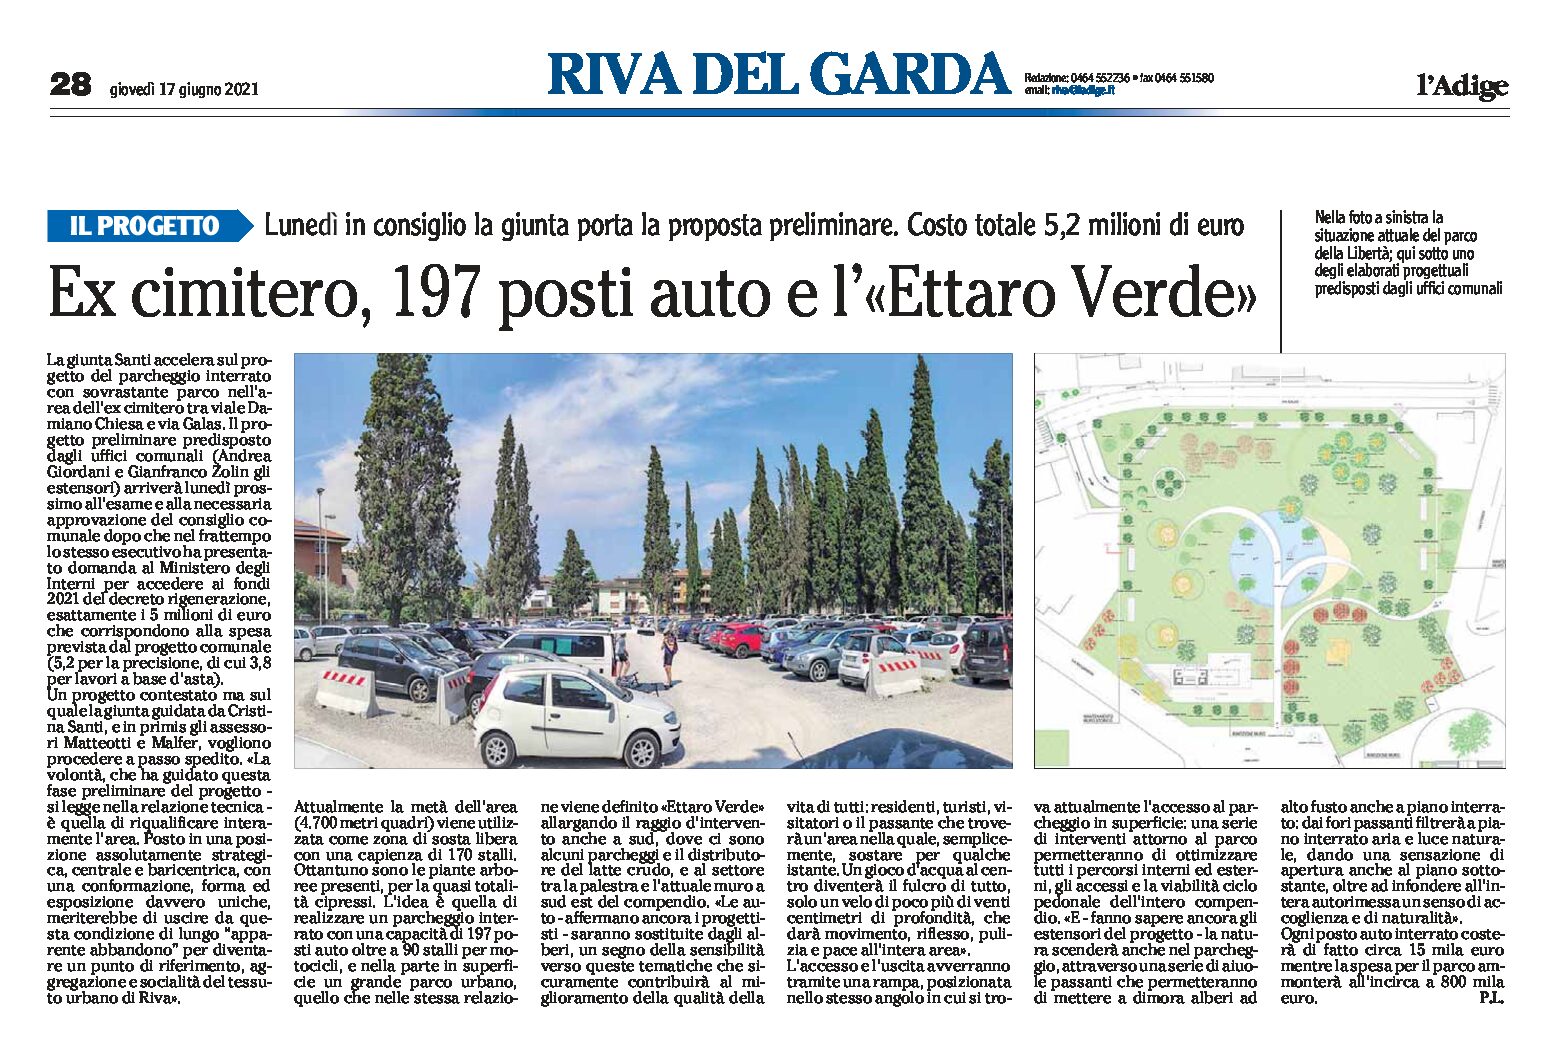 Riva, ex cimitero: 197 posti auto e “Ettaro Verde”